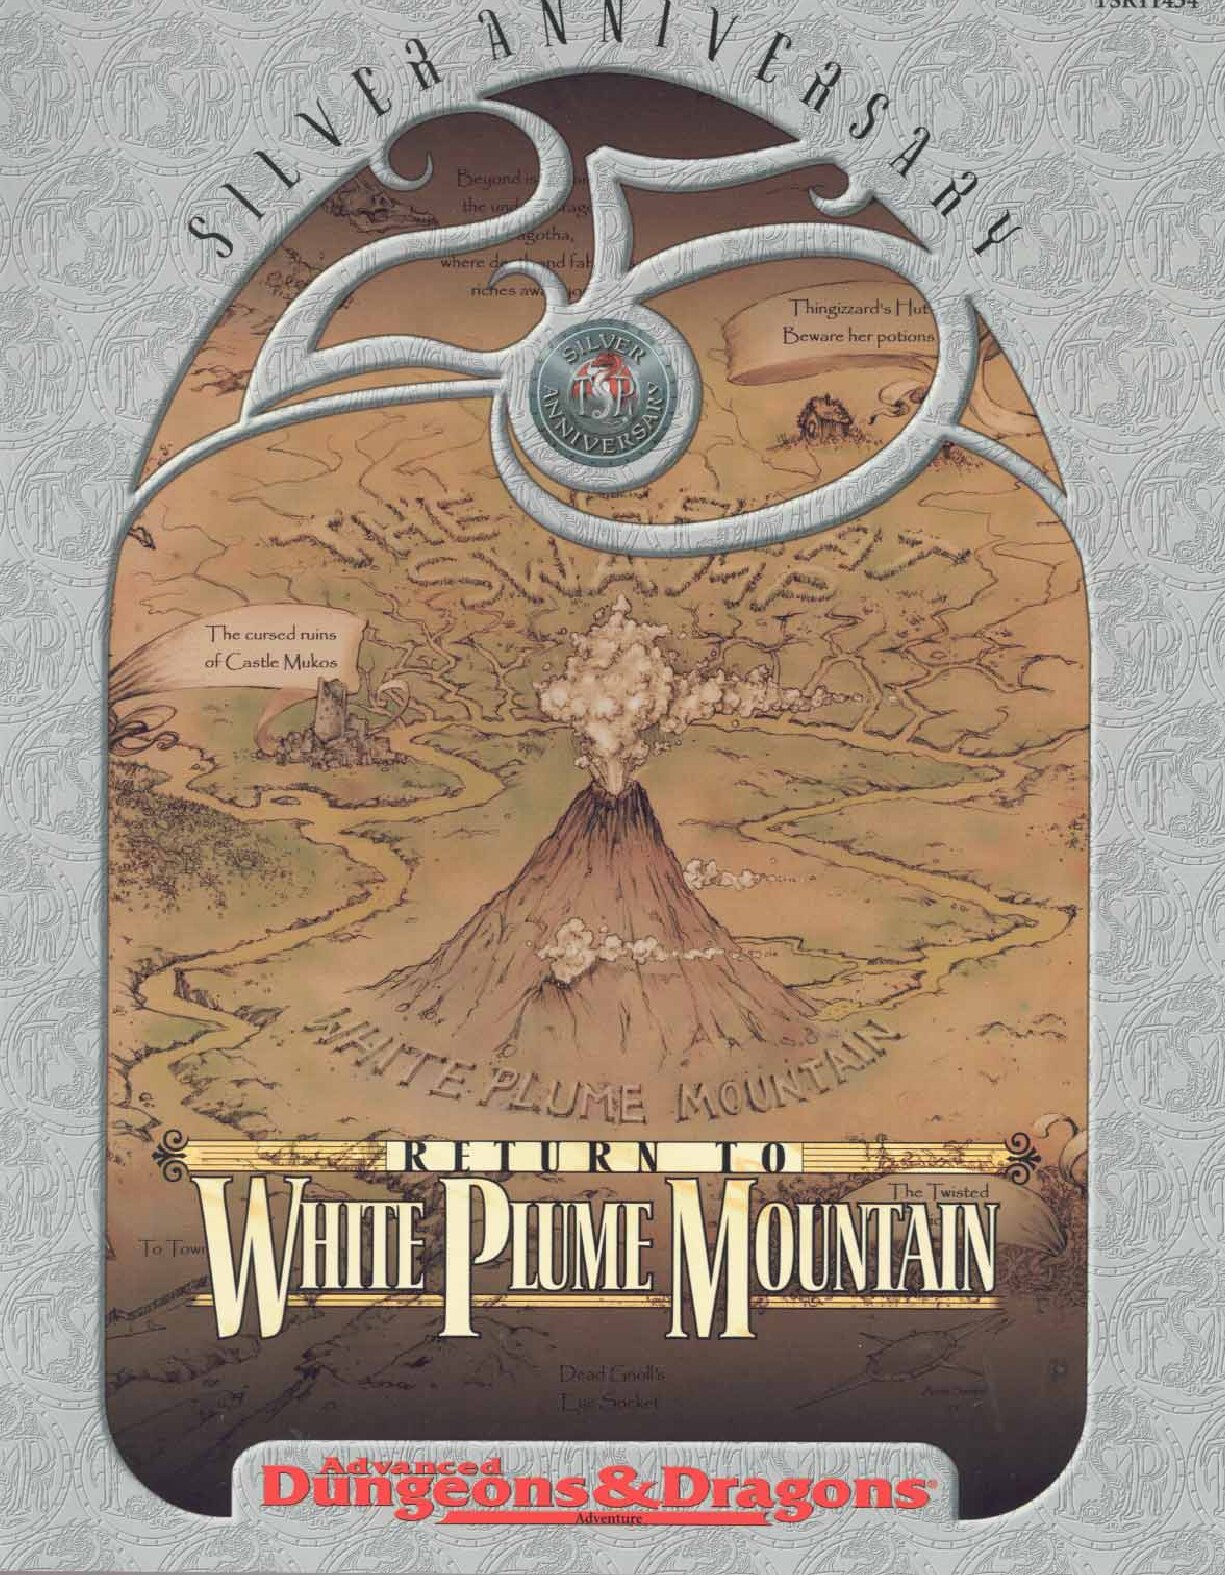 Return to White Plume Mountain